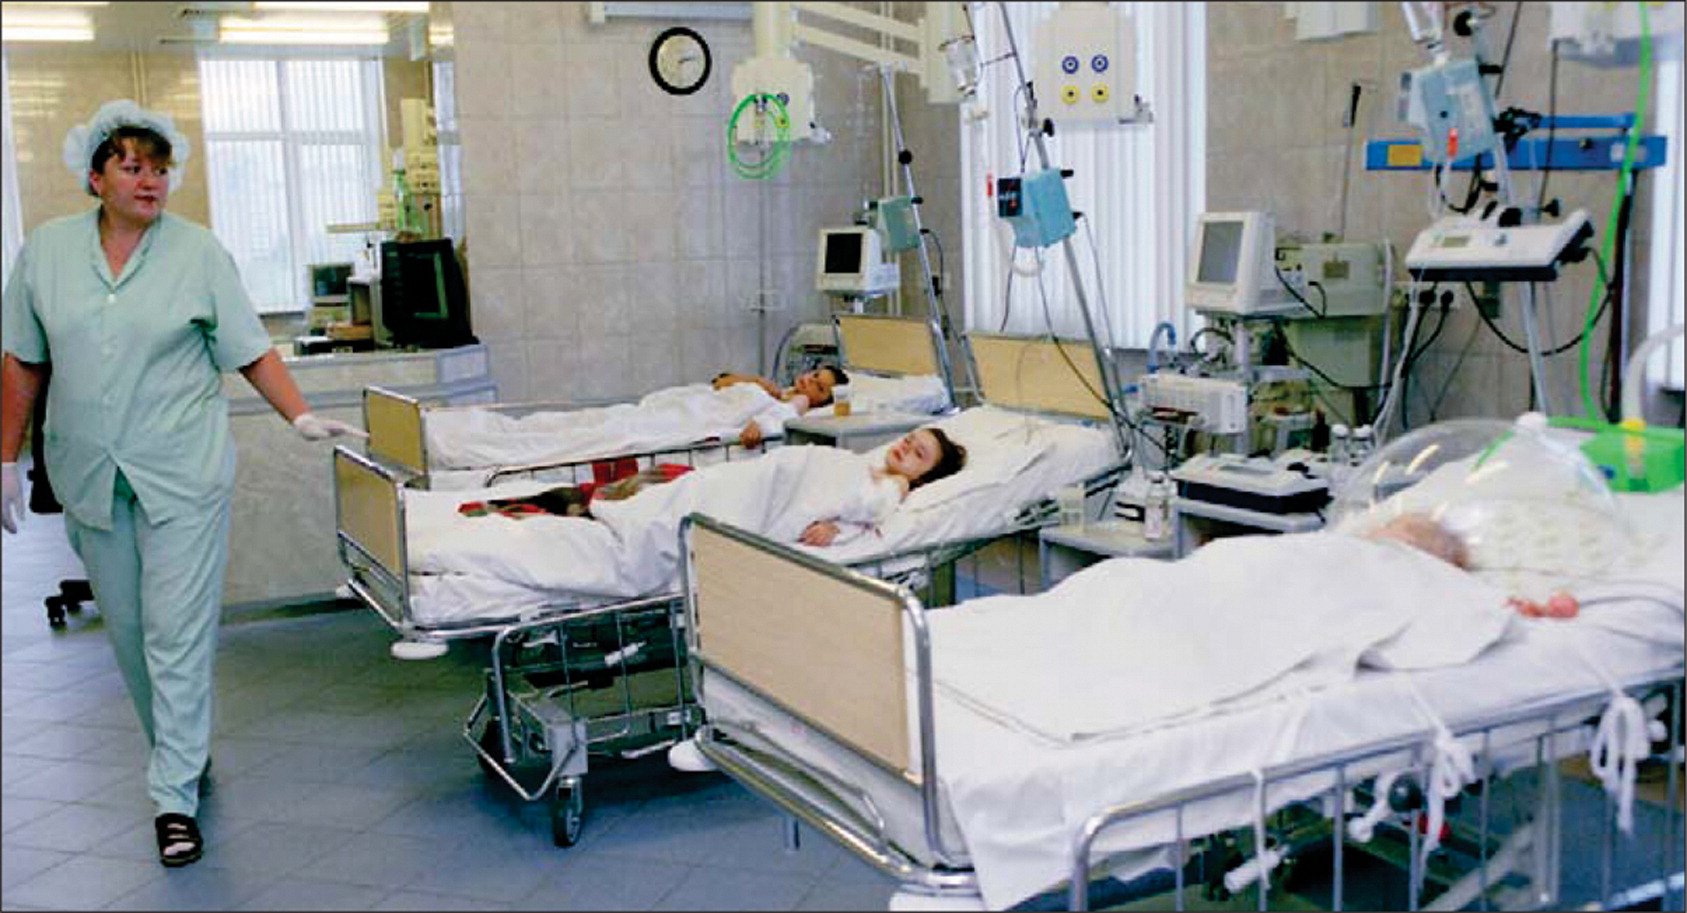  Cel puţin şapte morţi în Rusia, din cauza intoxicării cu un produs chimic folosit în examene medicale